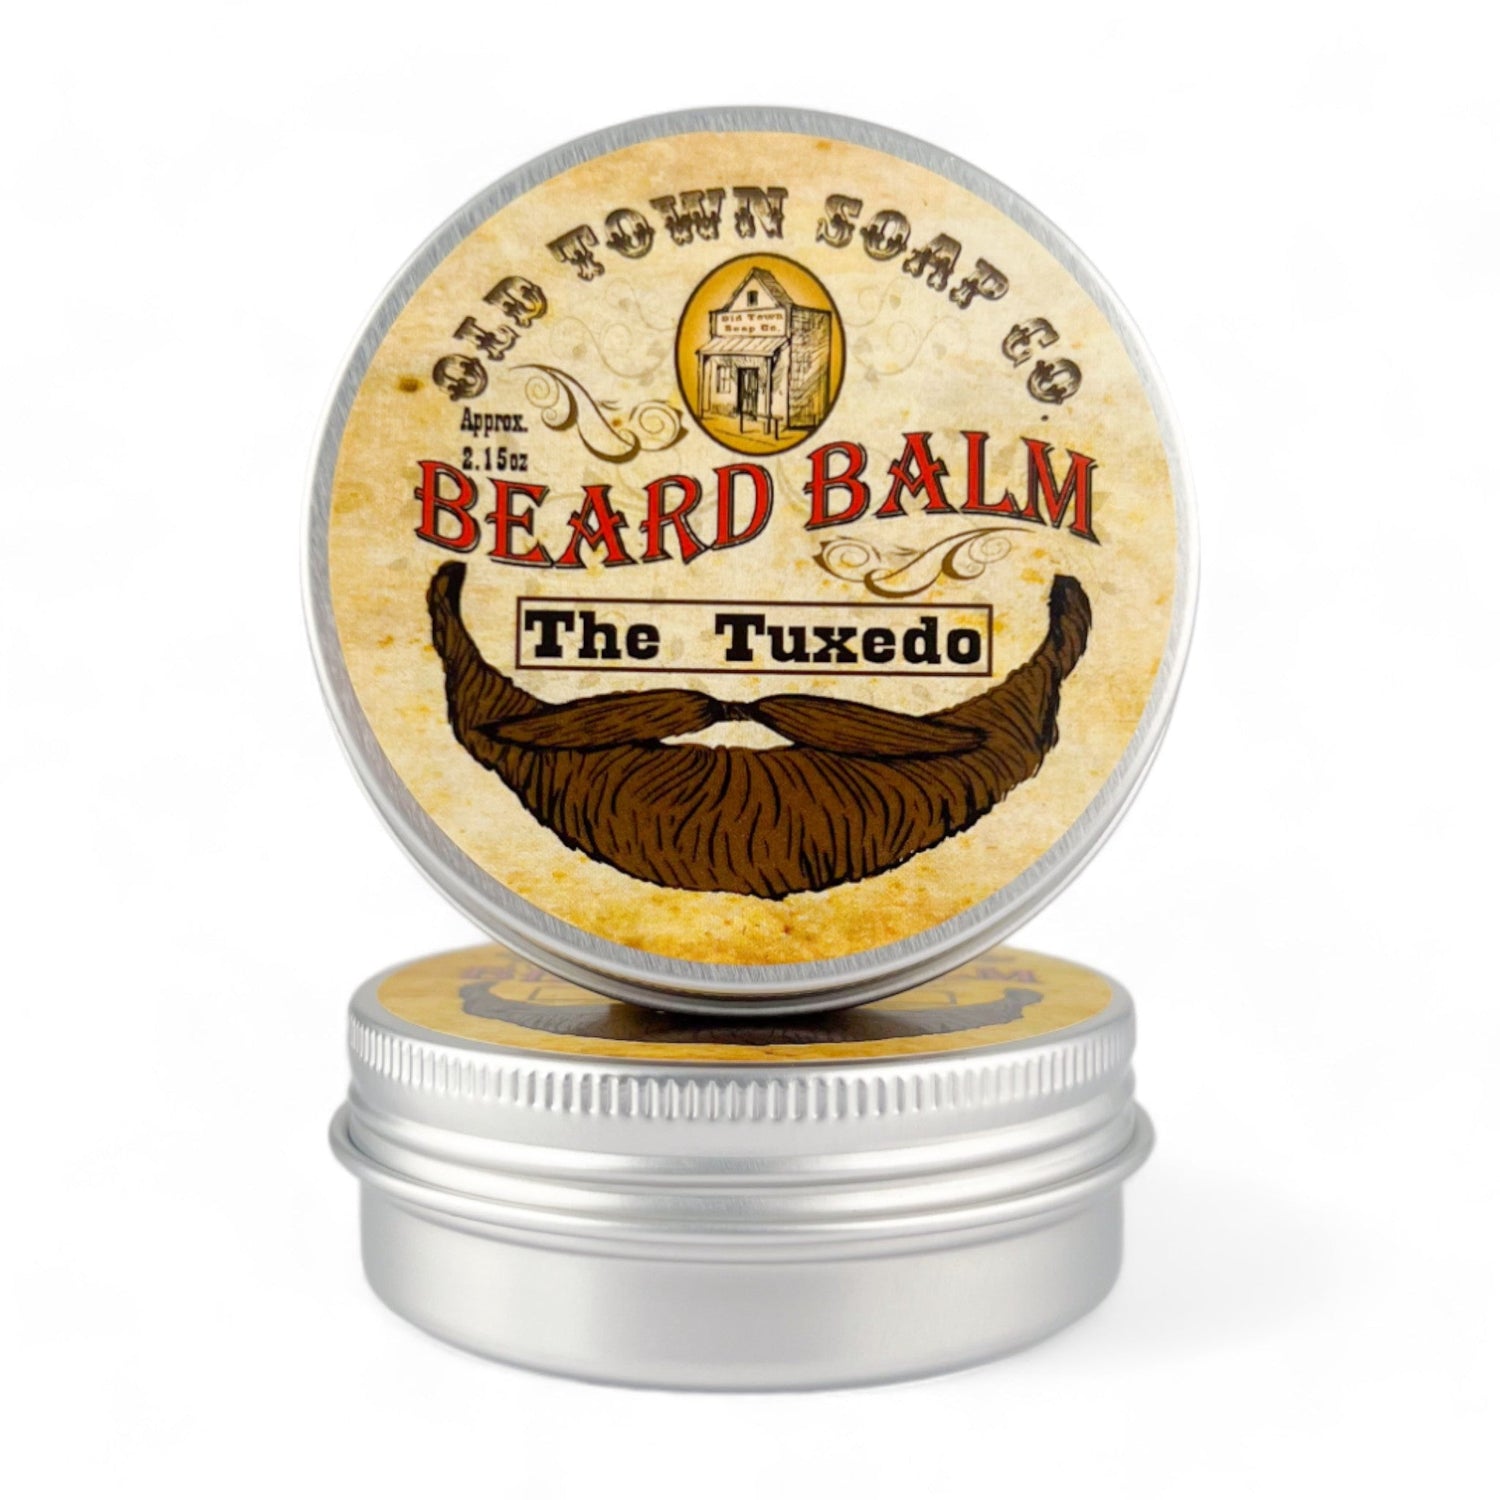 The Tuxedo Beard Balm - Old Town Soap Co.